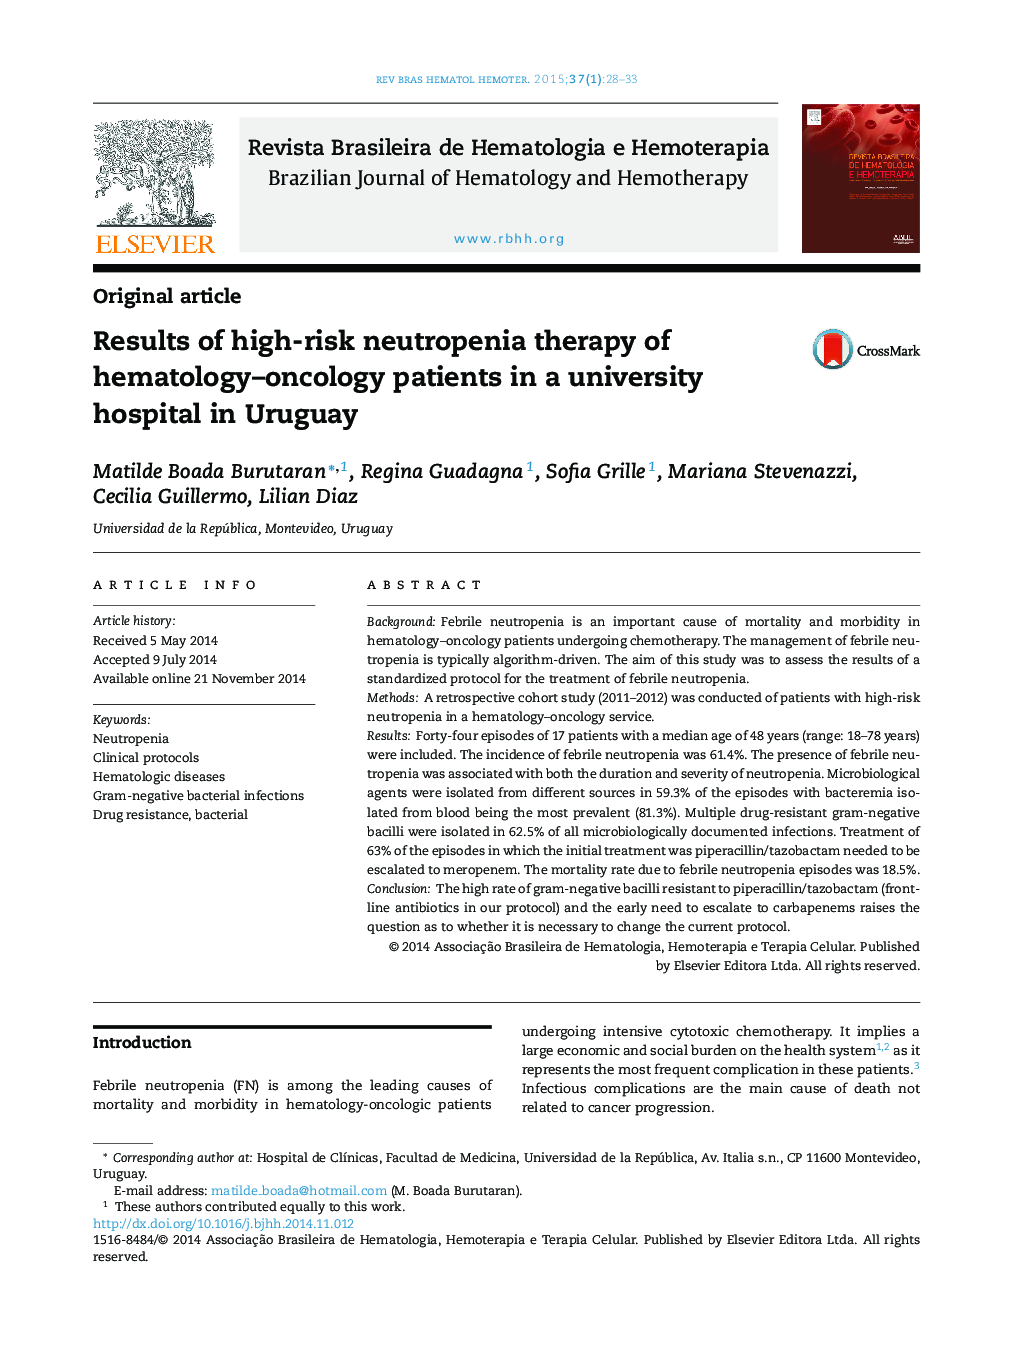 نتایج درمان نوتروپنی بالا در بیماران هماتولوژیک در بیمارستان دانشگاه اروگوئه 